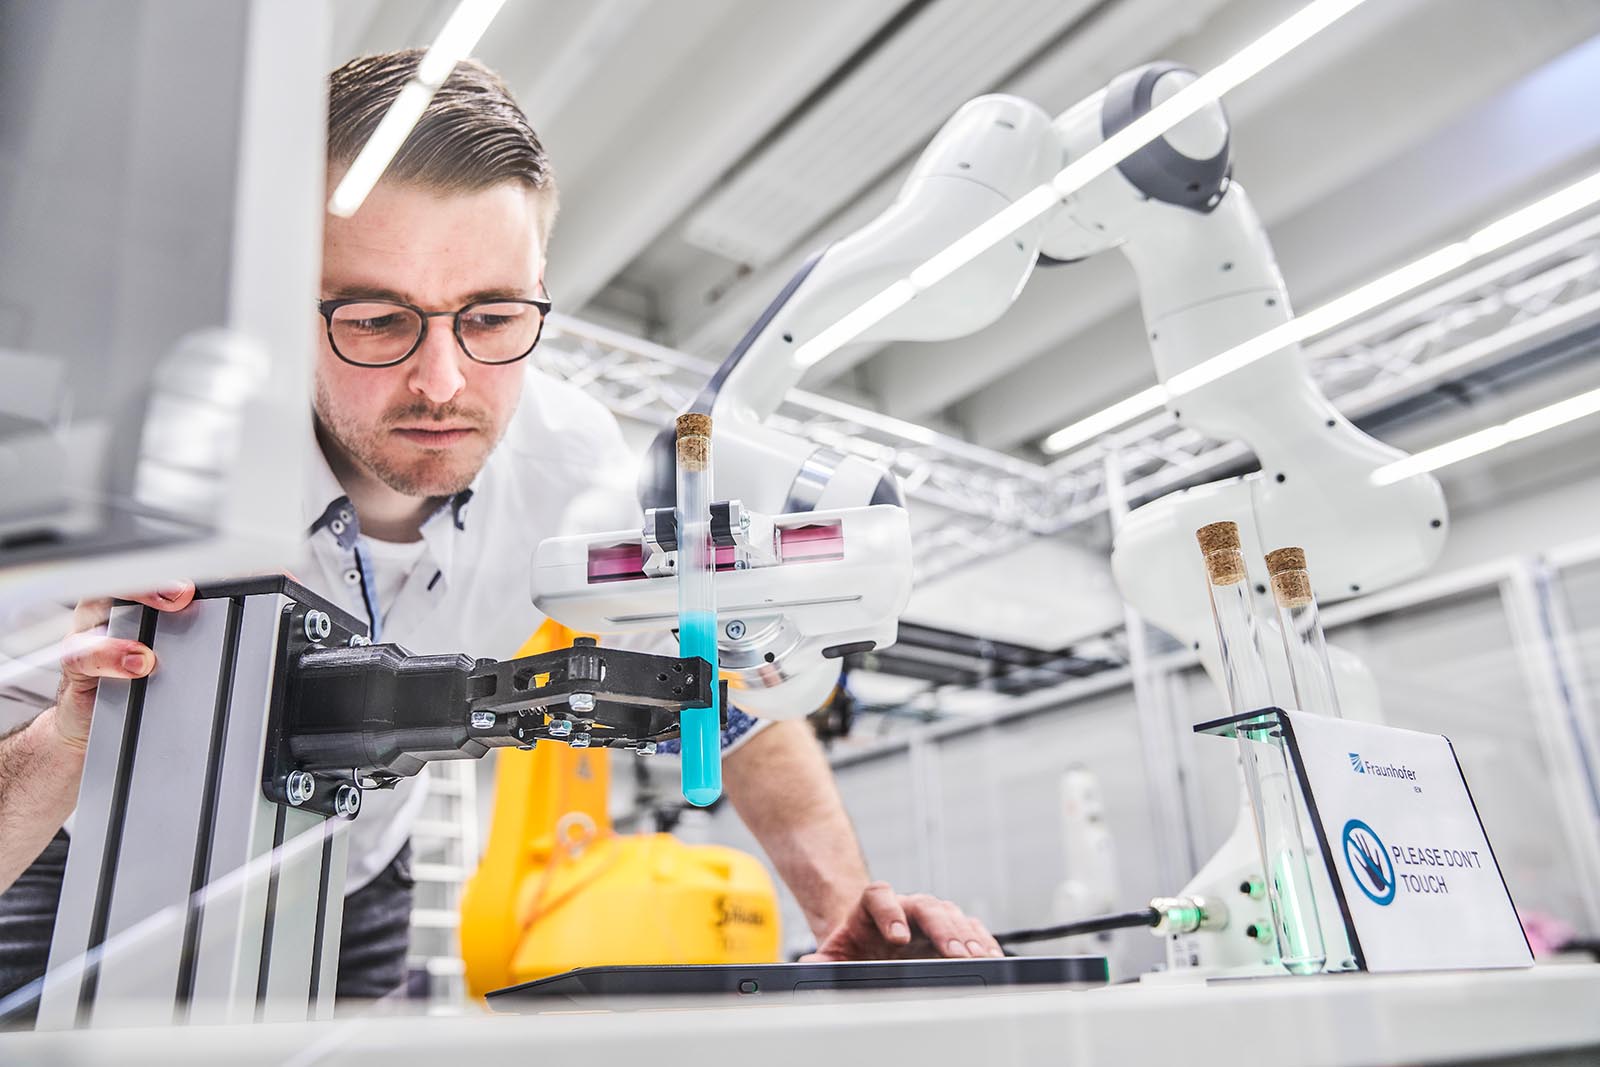 Das Fraunhofer IEM forscht an intelligenten Greifsystemen. Auf der Hannover Messe 2023 stellt es einen innovativen Roboter-Greifer vor, der ganz ohne aufwendige Pneumatik auskommt.